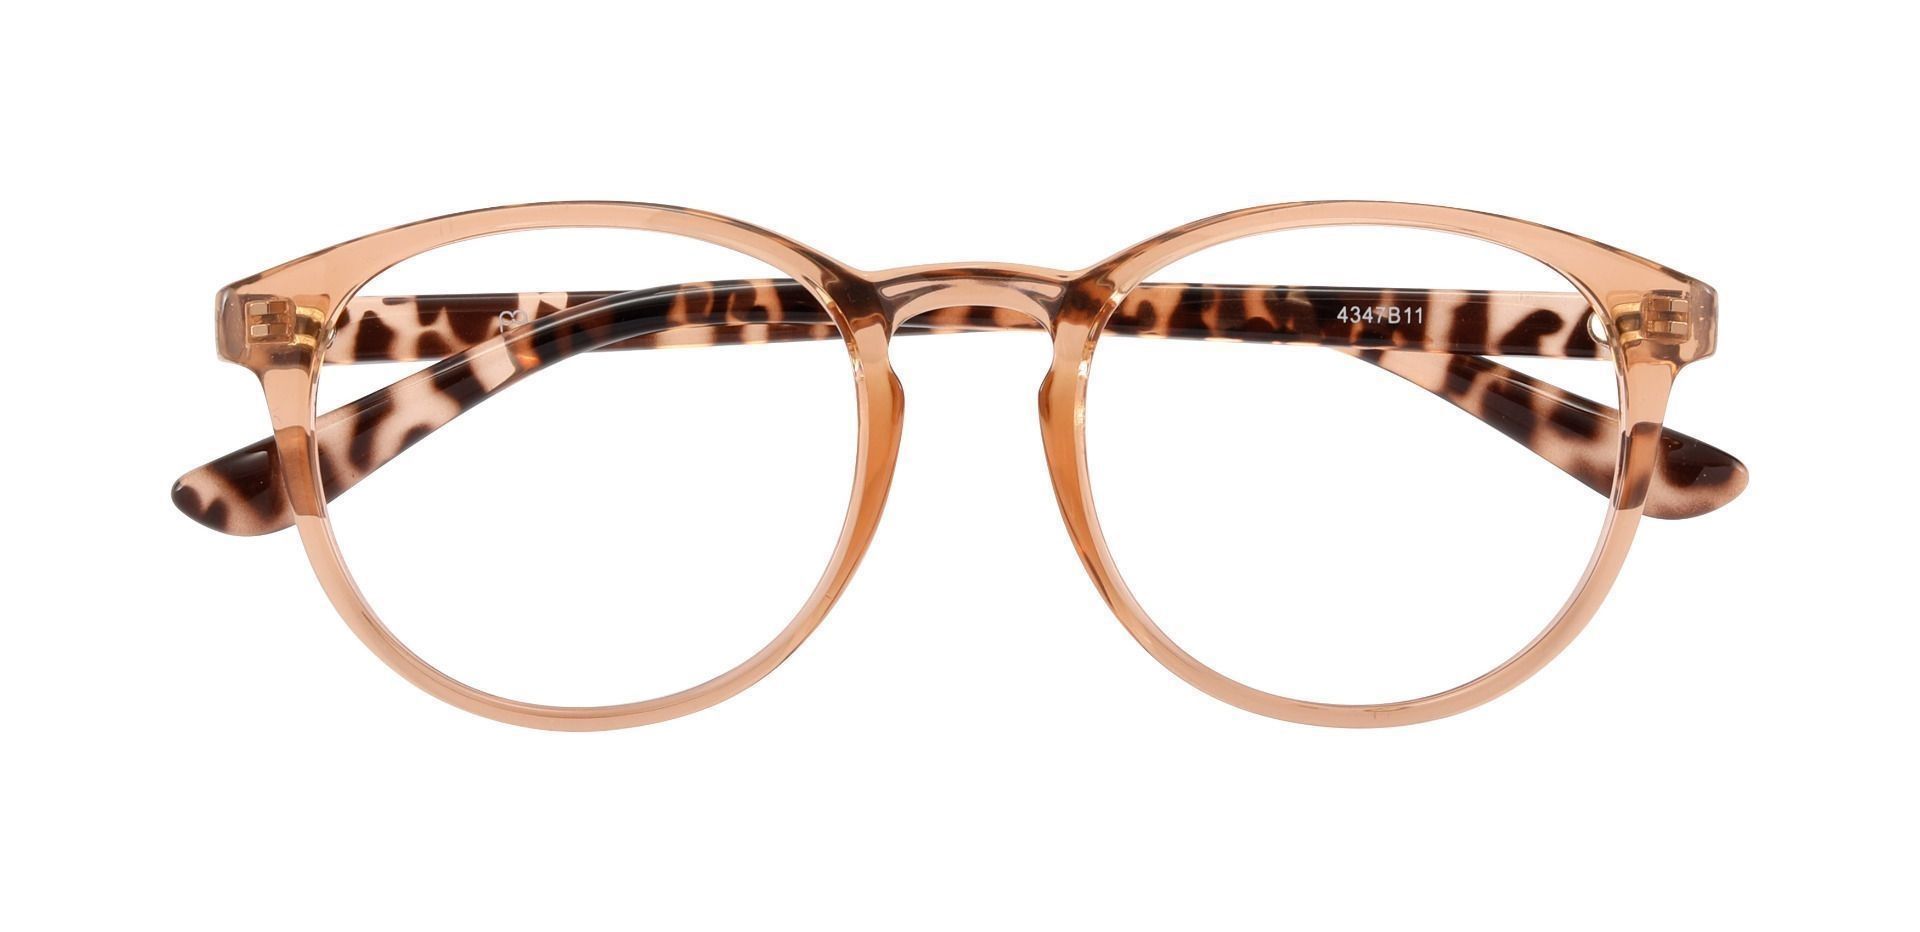 Clarita Oval Prescription Glasses - Brown